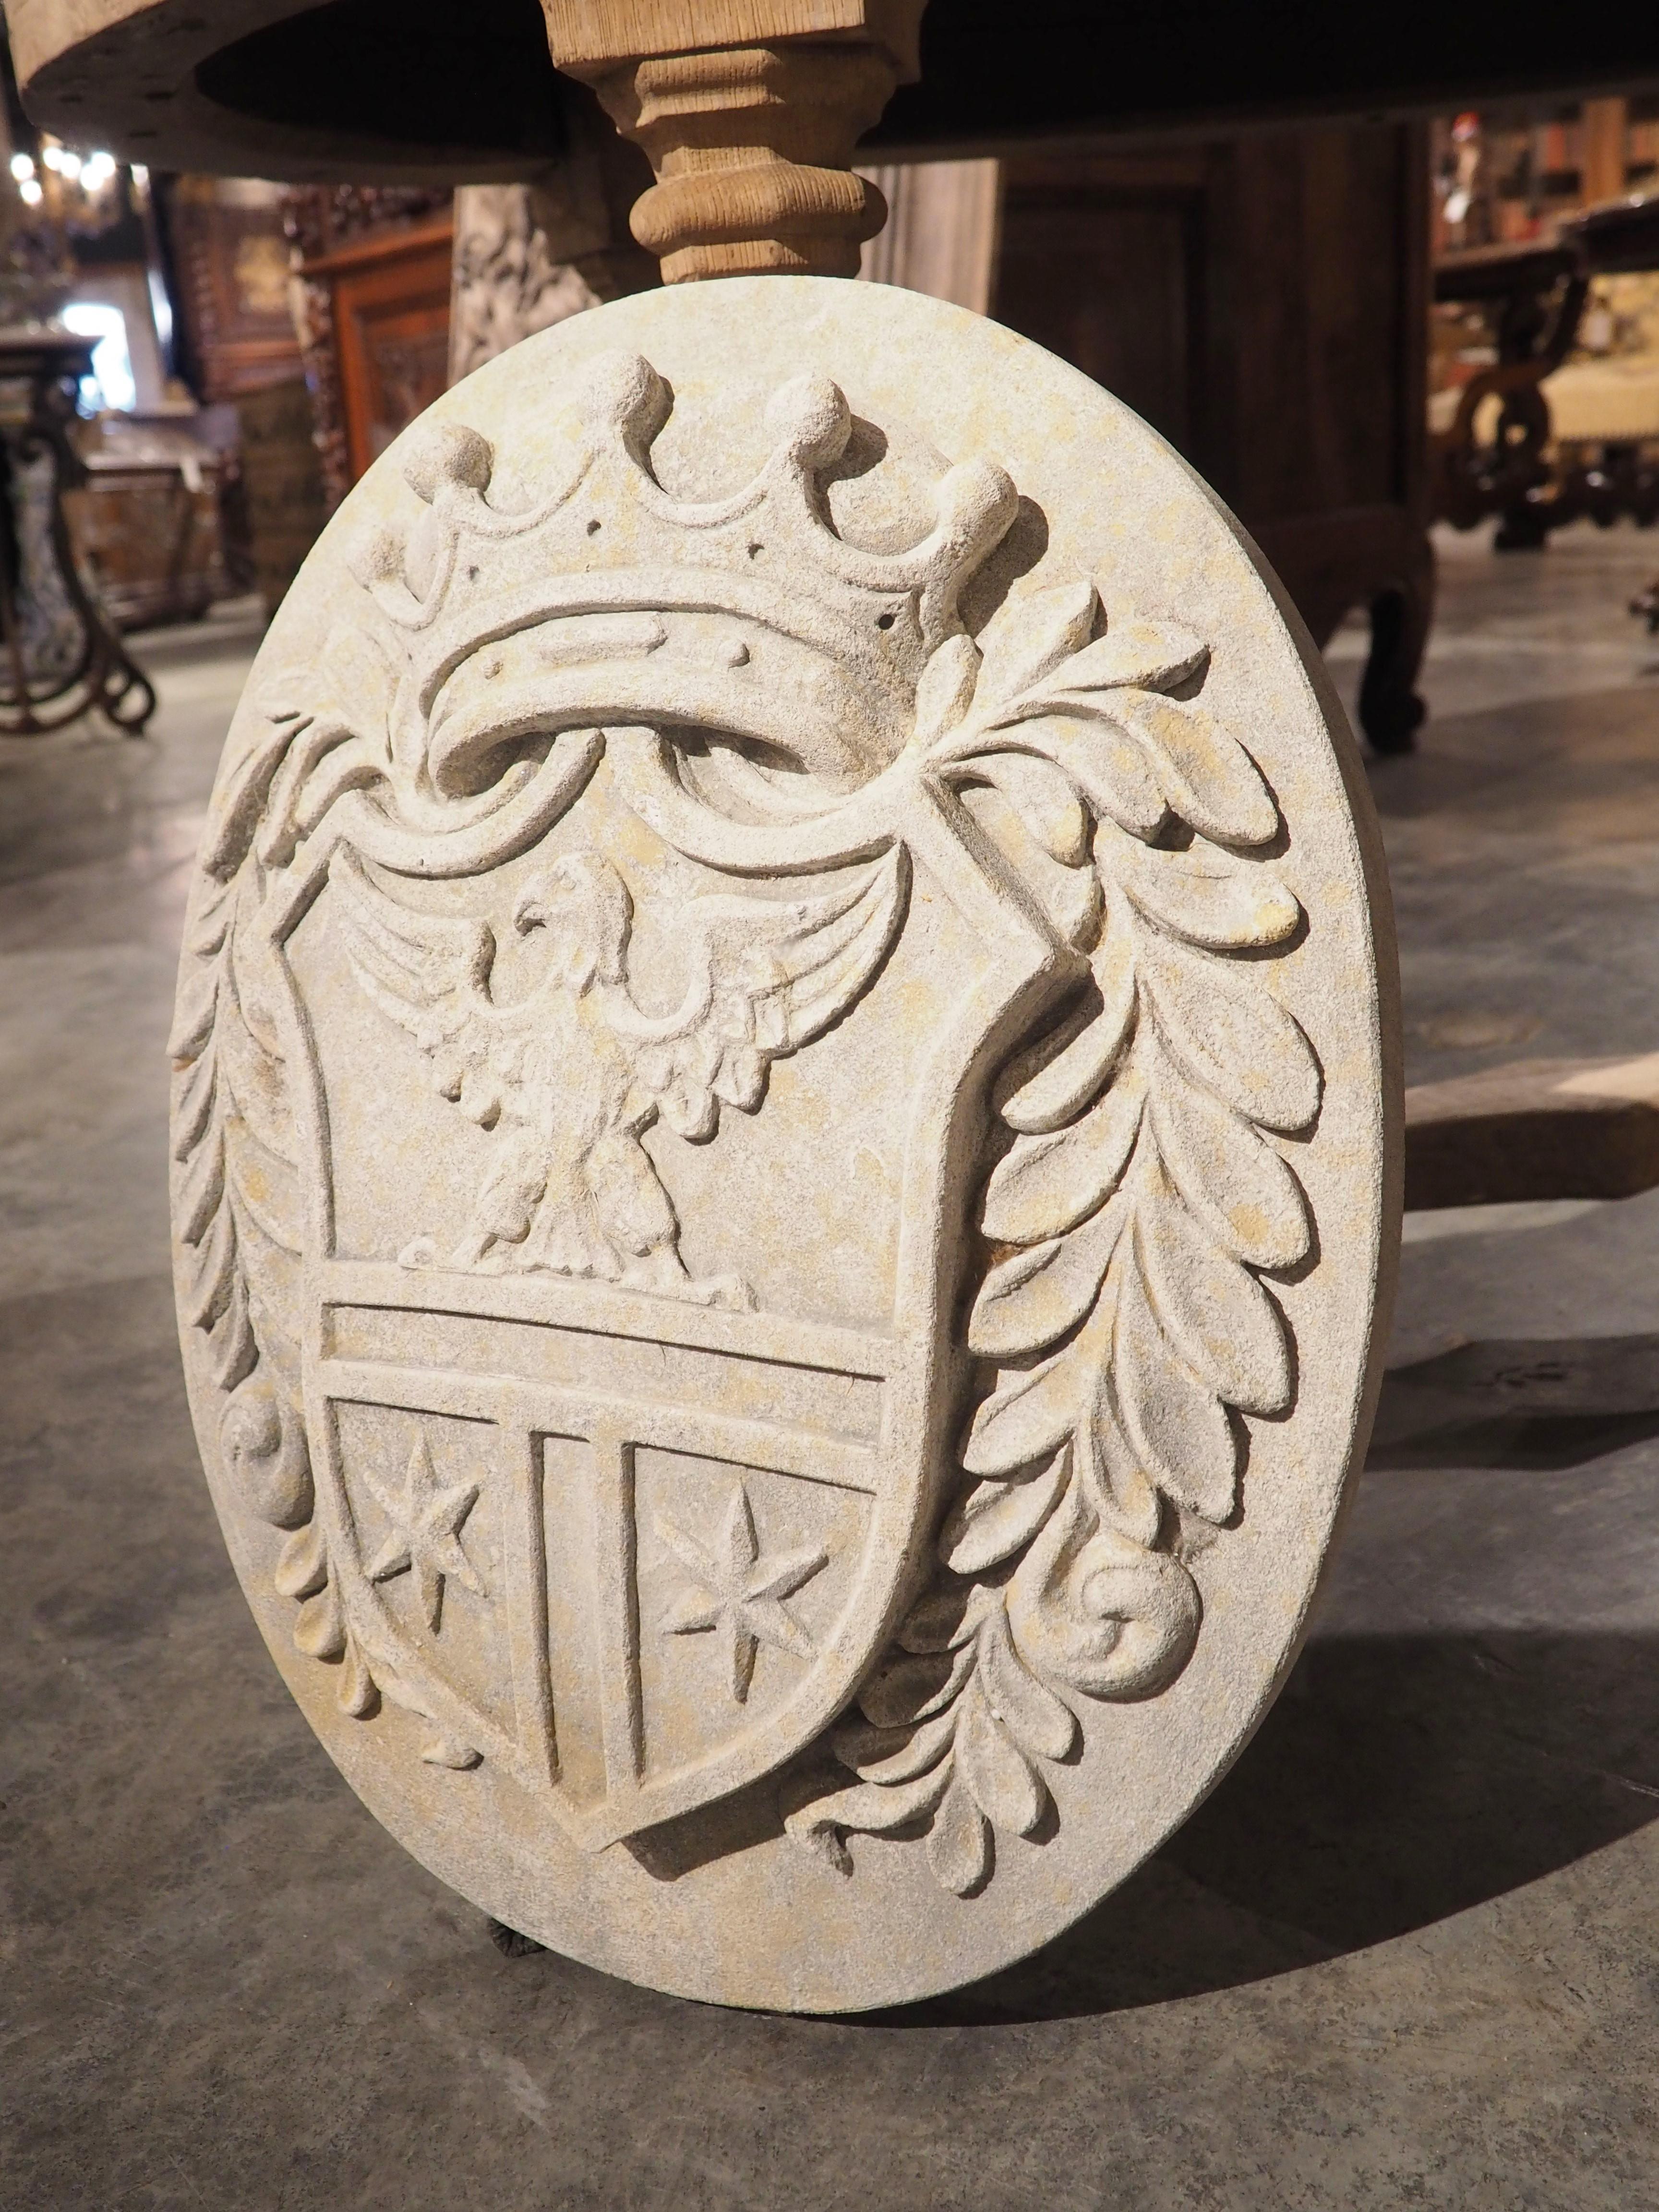 Sculptée à la main dans du calcaire italien, cette plaque d'armoiries avec couronne et aigle présente des motifs en bas et moyen relief. Le bas-relief est une technique de sculpture où les sculptures en relief ont un profil peu profond, tandis que